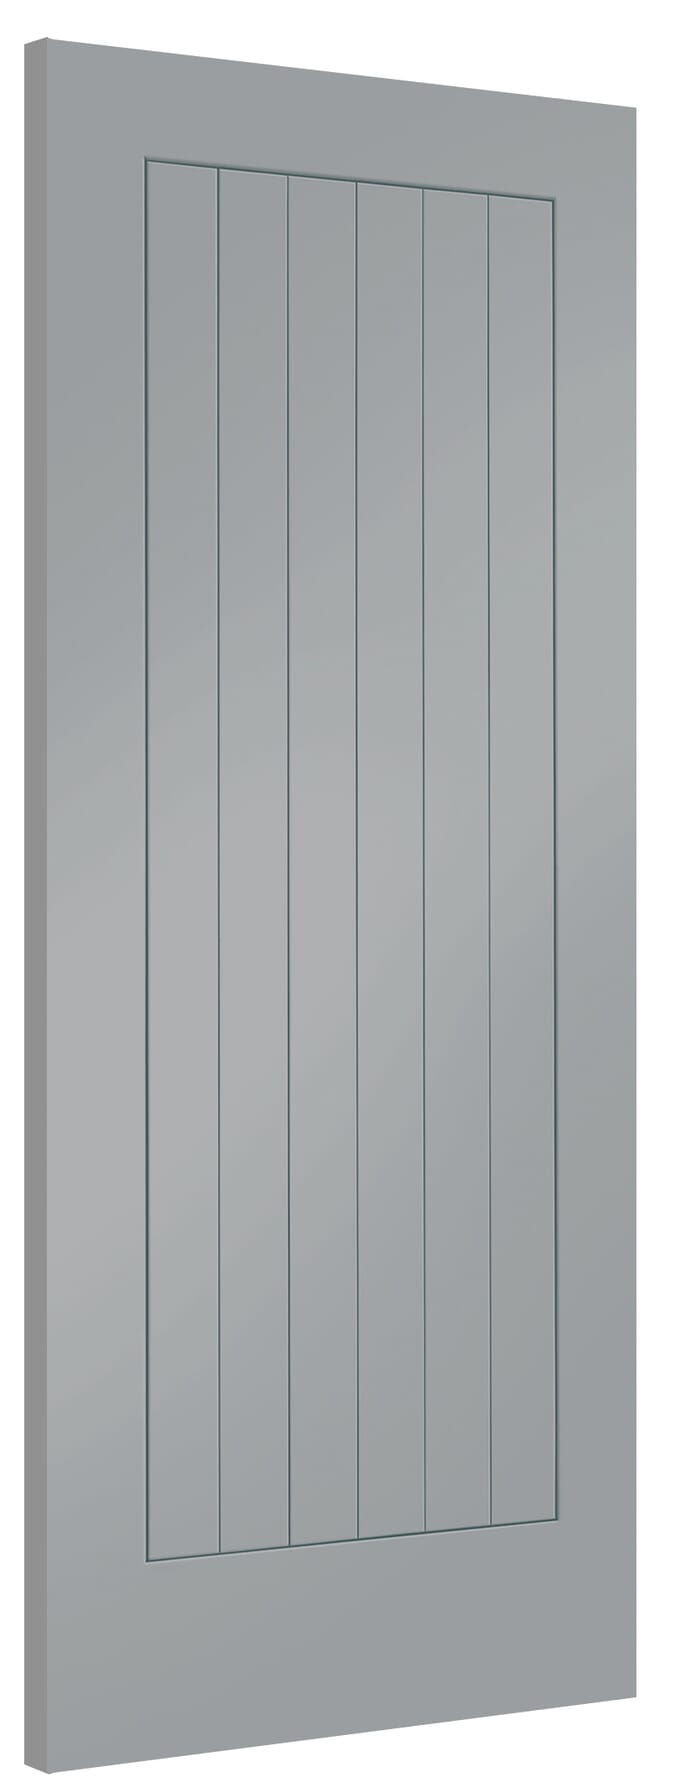 626x2040x40mm Suffolk Storm Grey Internal Doors